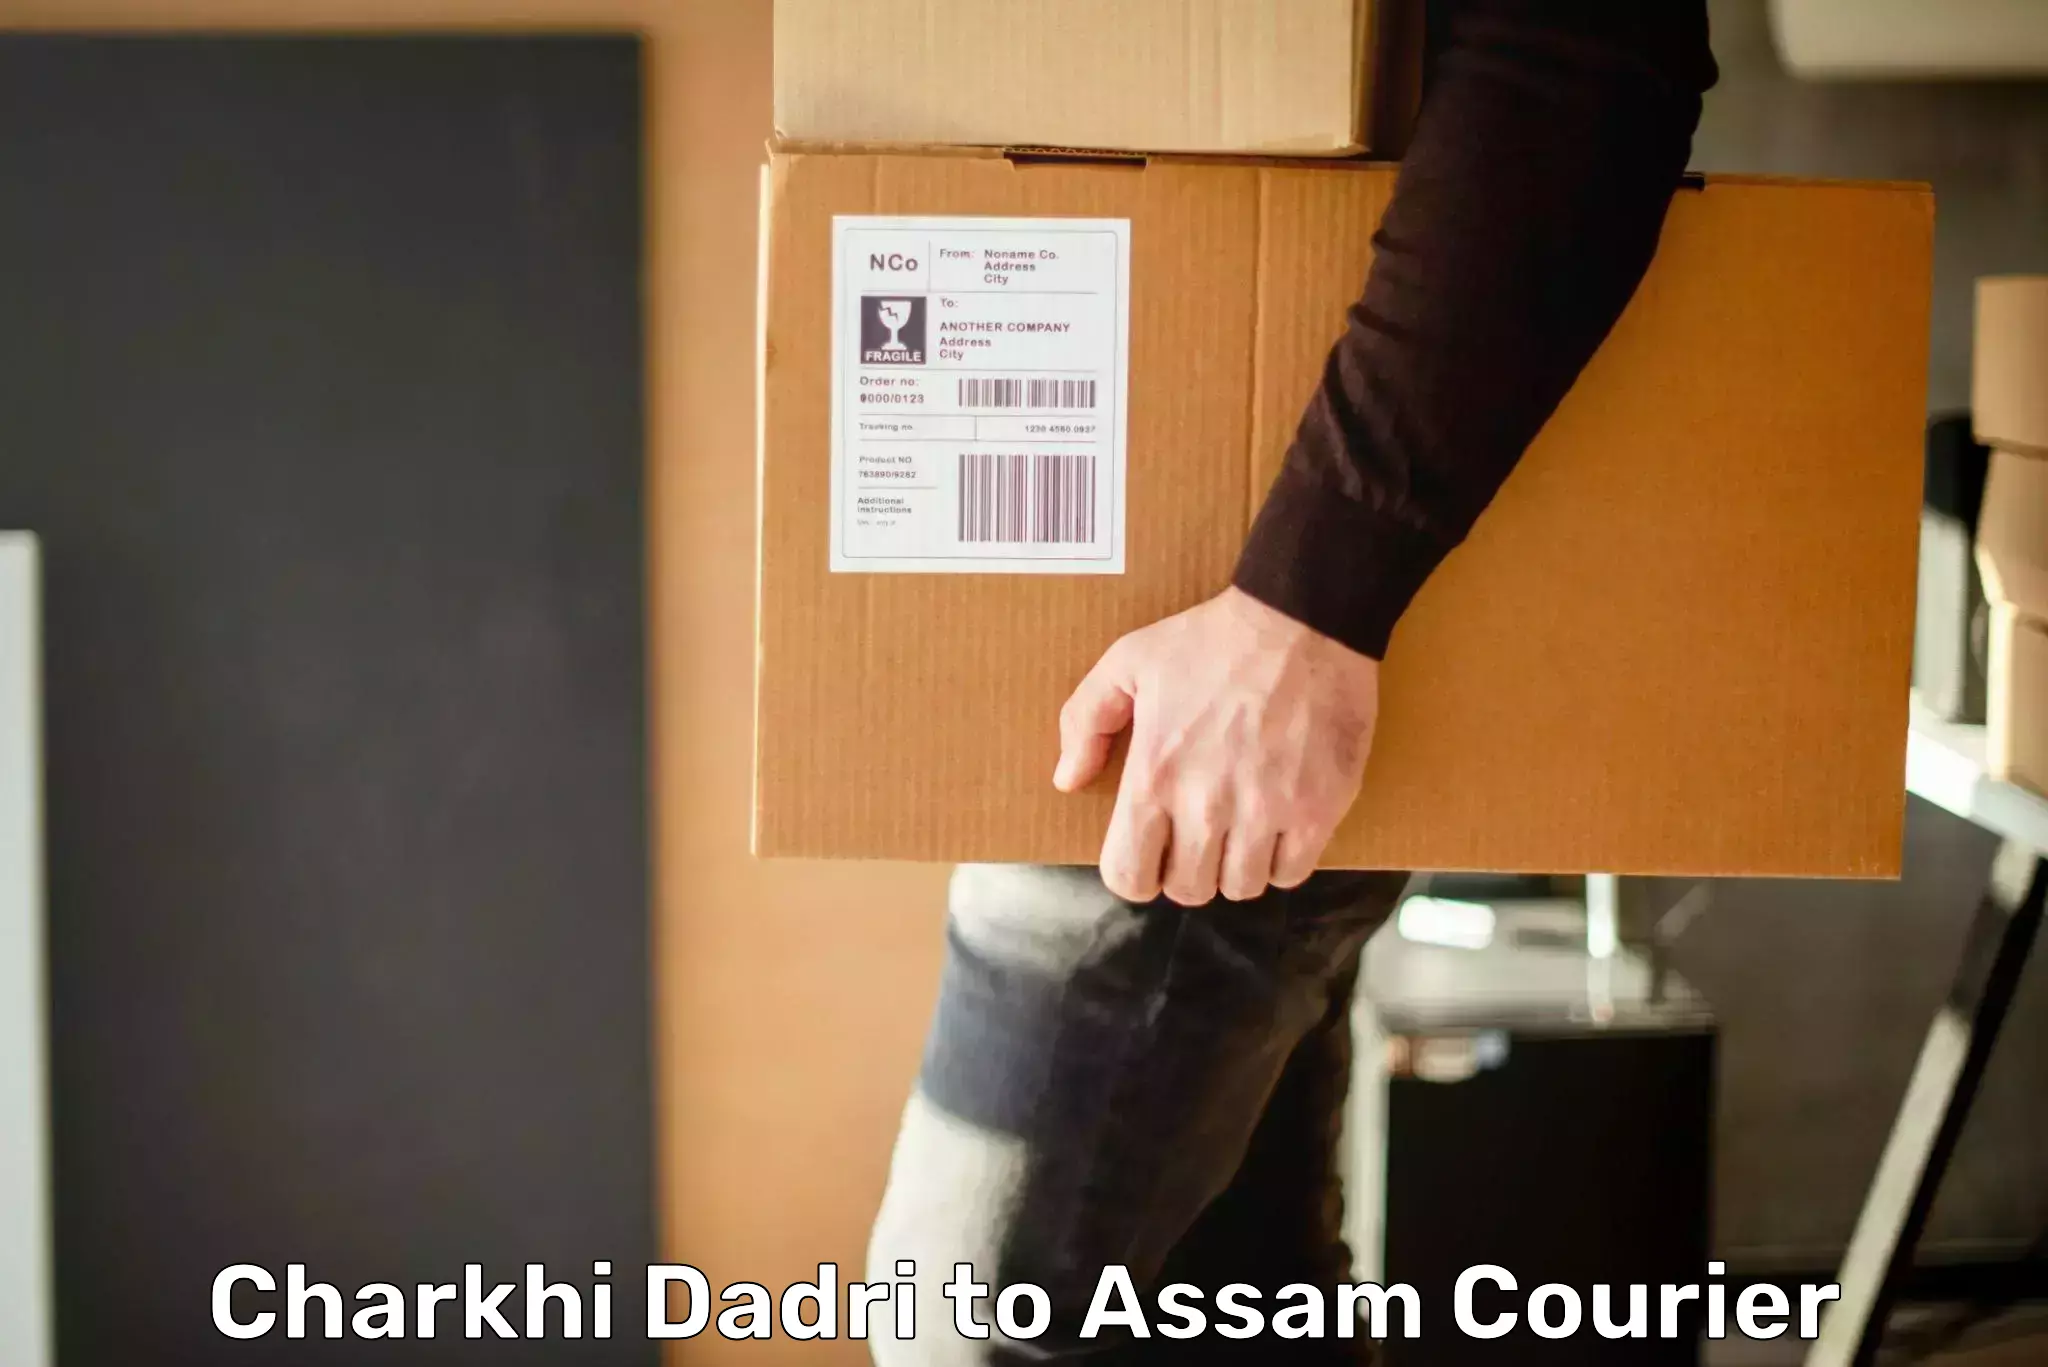 Courier service comparison Charkhi Dadri to Agomani